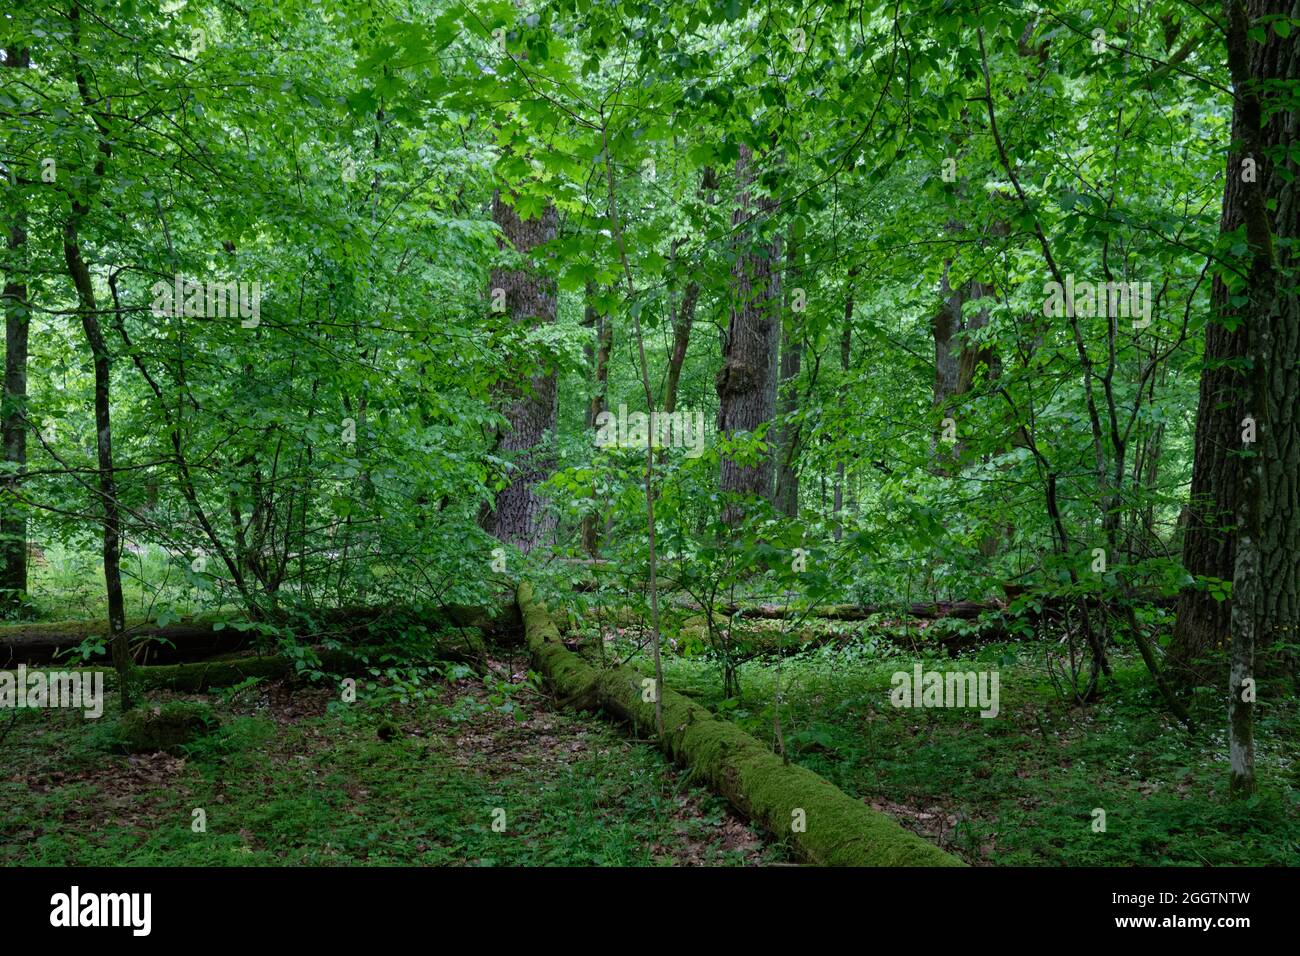 Peuplement naturel d'arbres à feuilles caduques avec de vieux chênes et de charme, forêt de Bialowieza, Pologne, Europe Banque D'Images